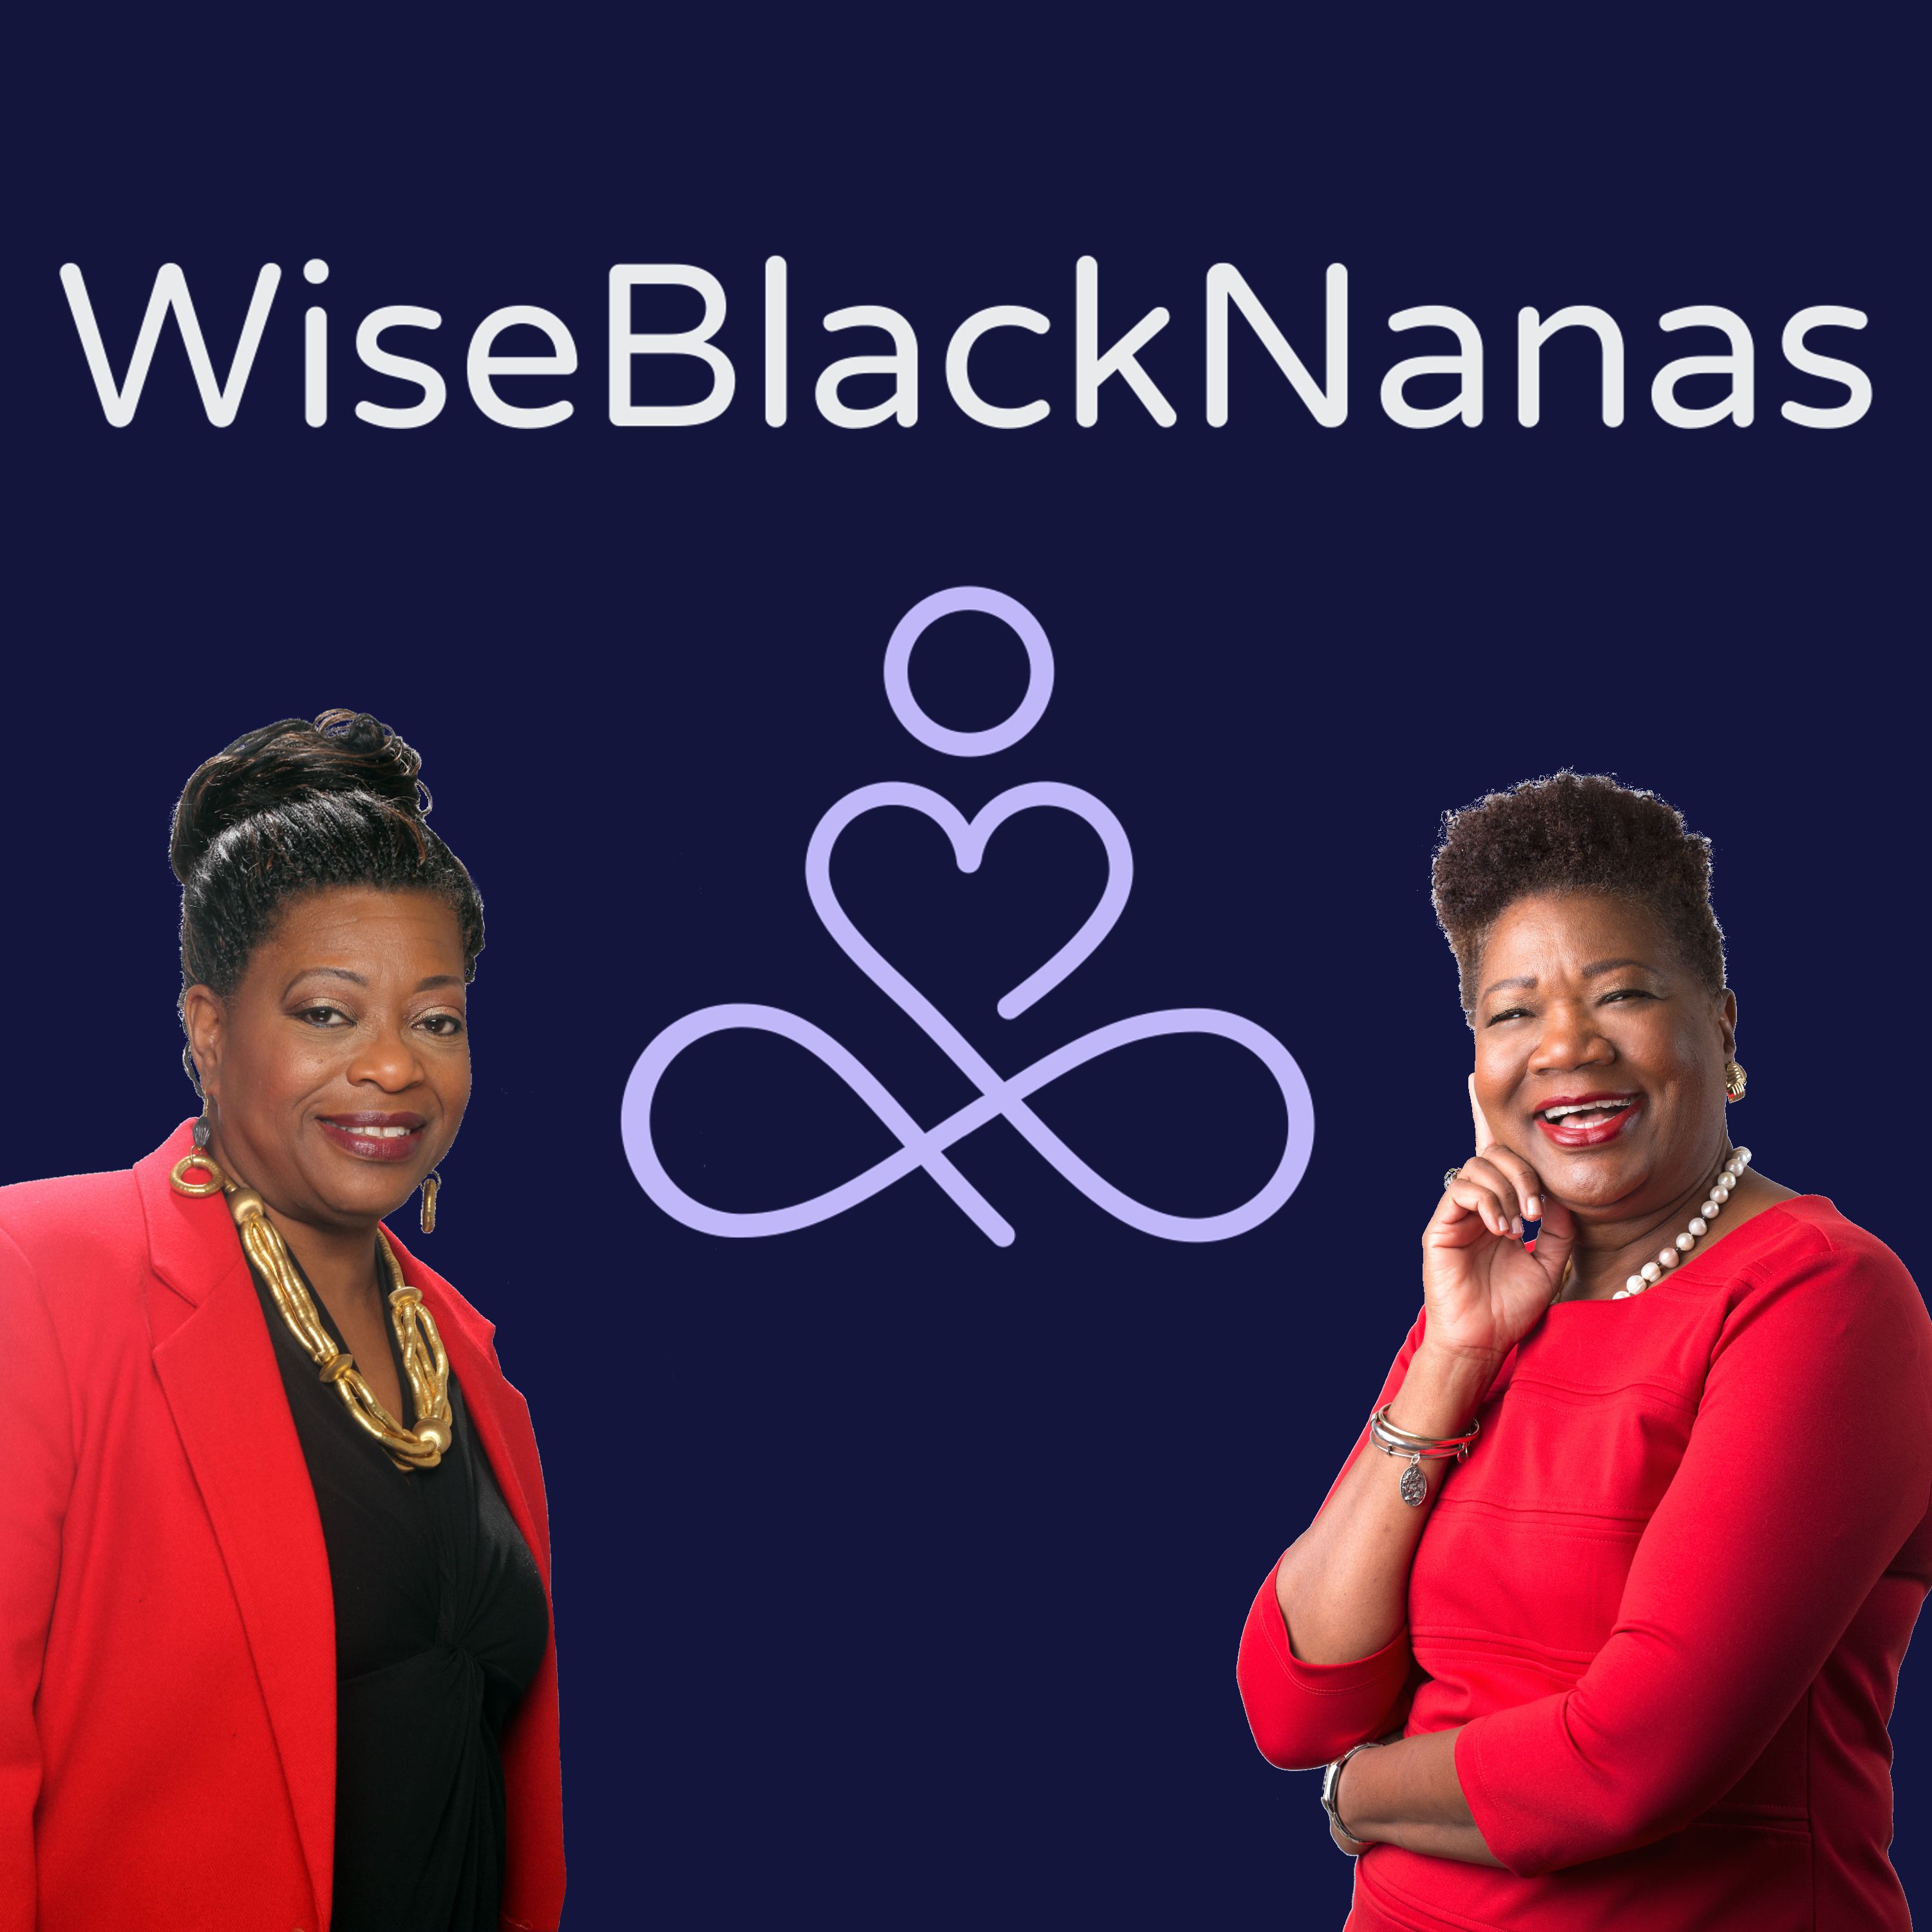 Wise Black Nanas